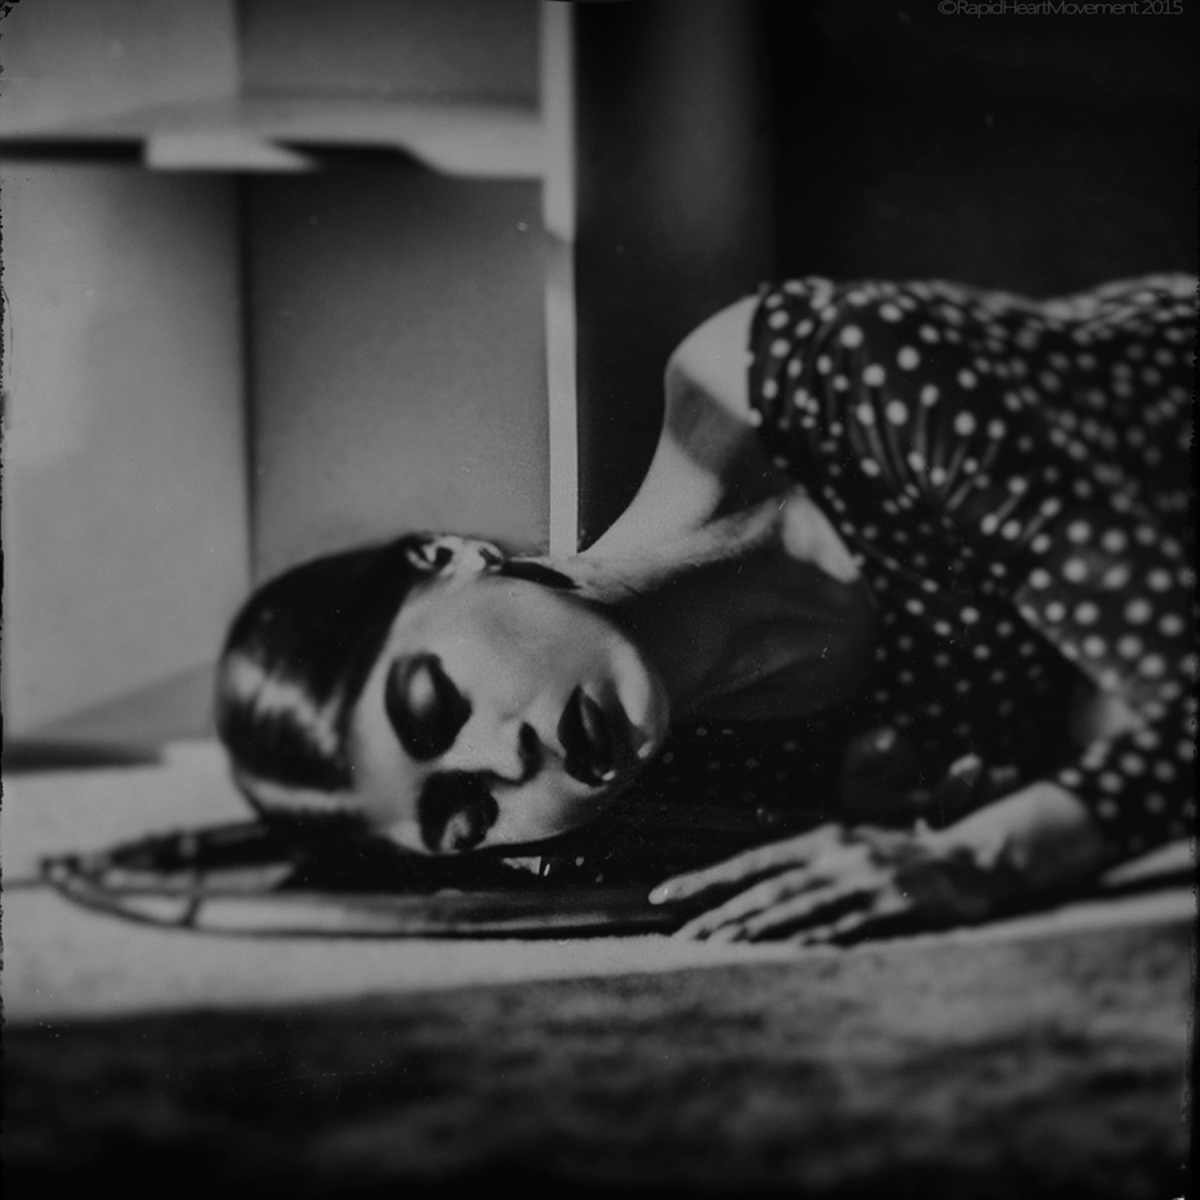 photo conceptual black and white mirrored portrait RapidHeartMovement